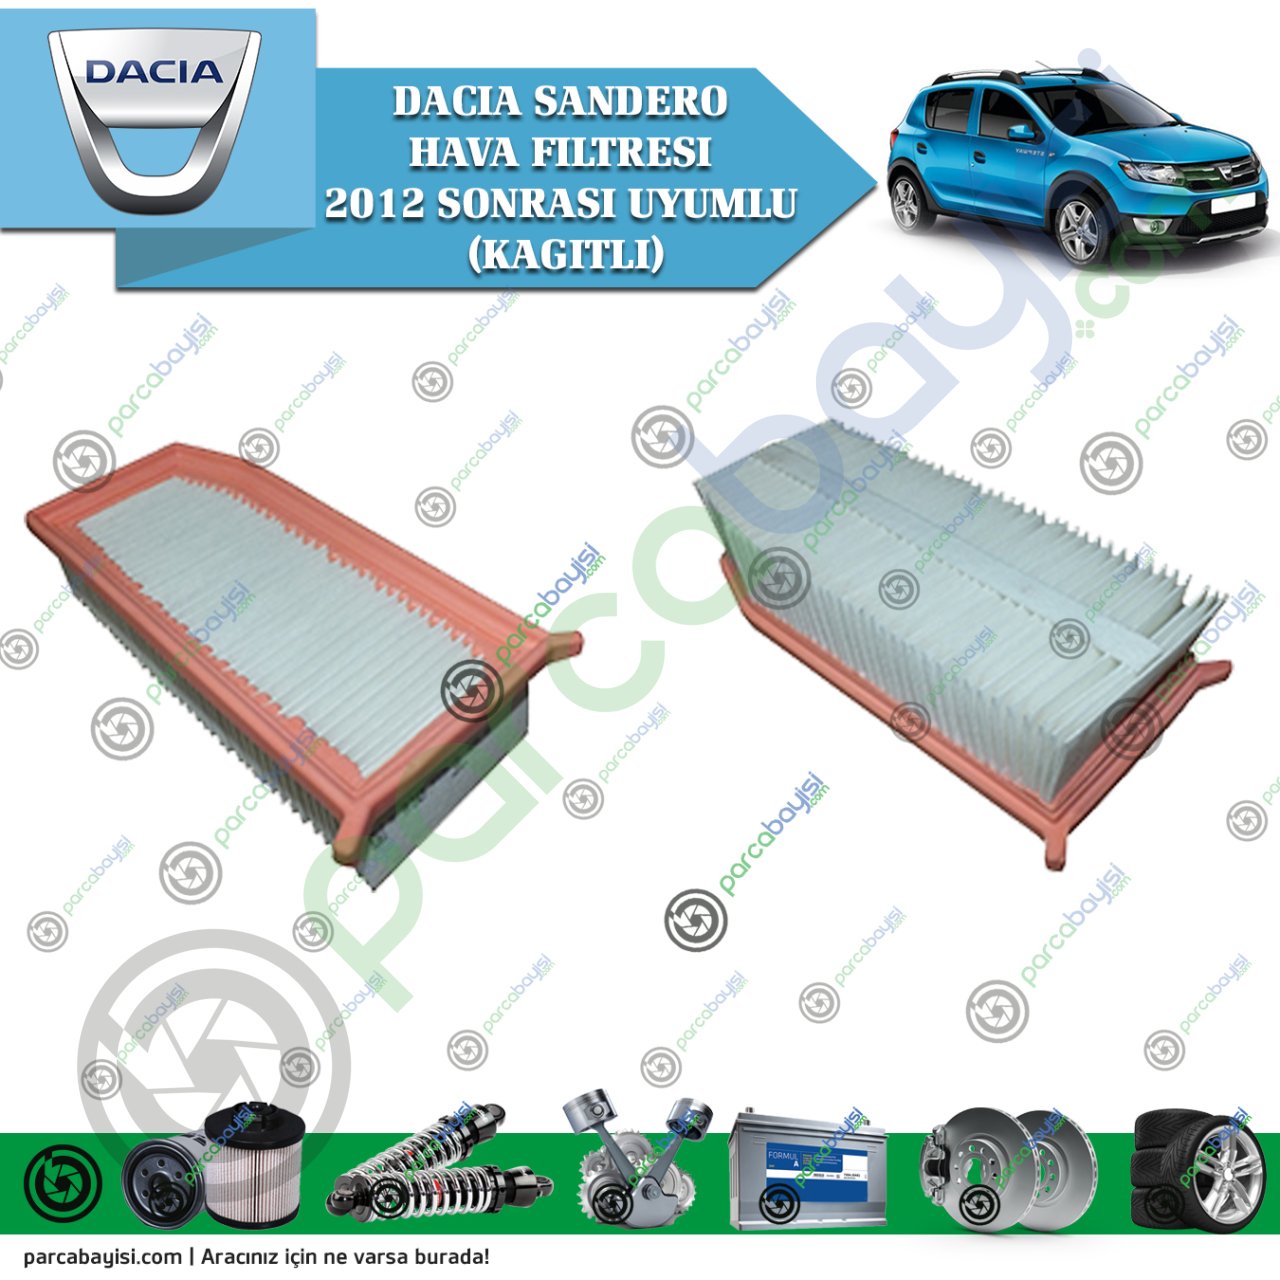 Dacia Sandero Hava Filtresi 2012 Sonrası Uyumlu Muadil (Kağıtlı)